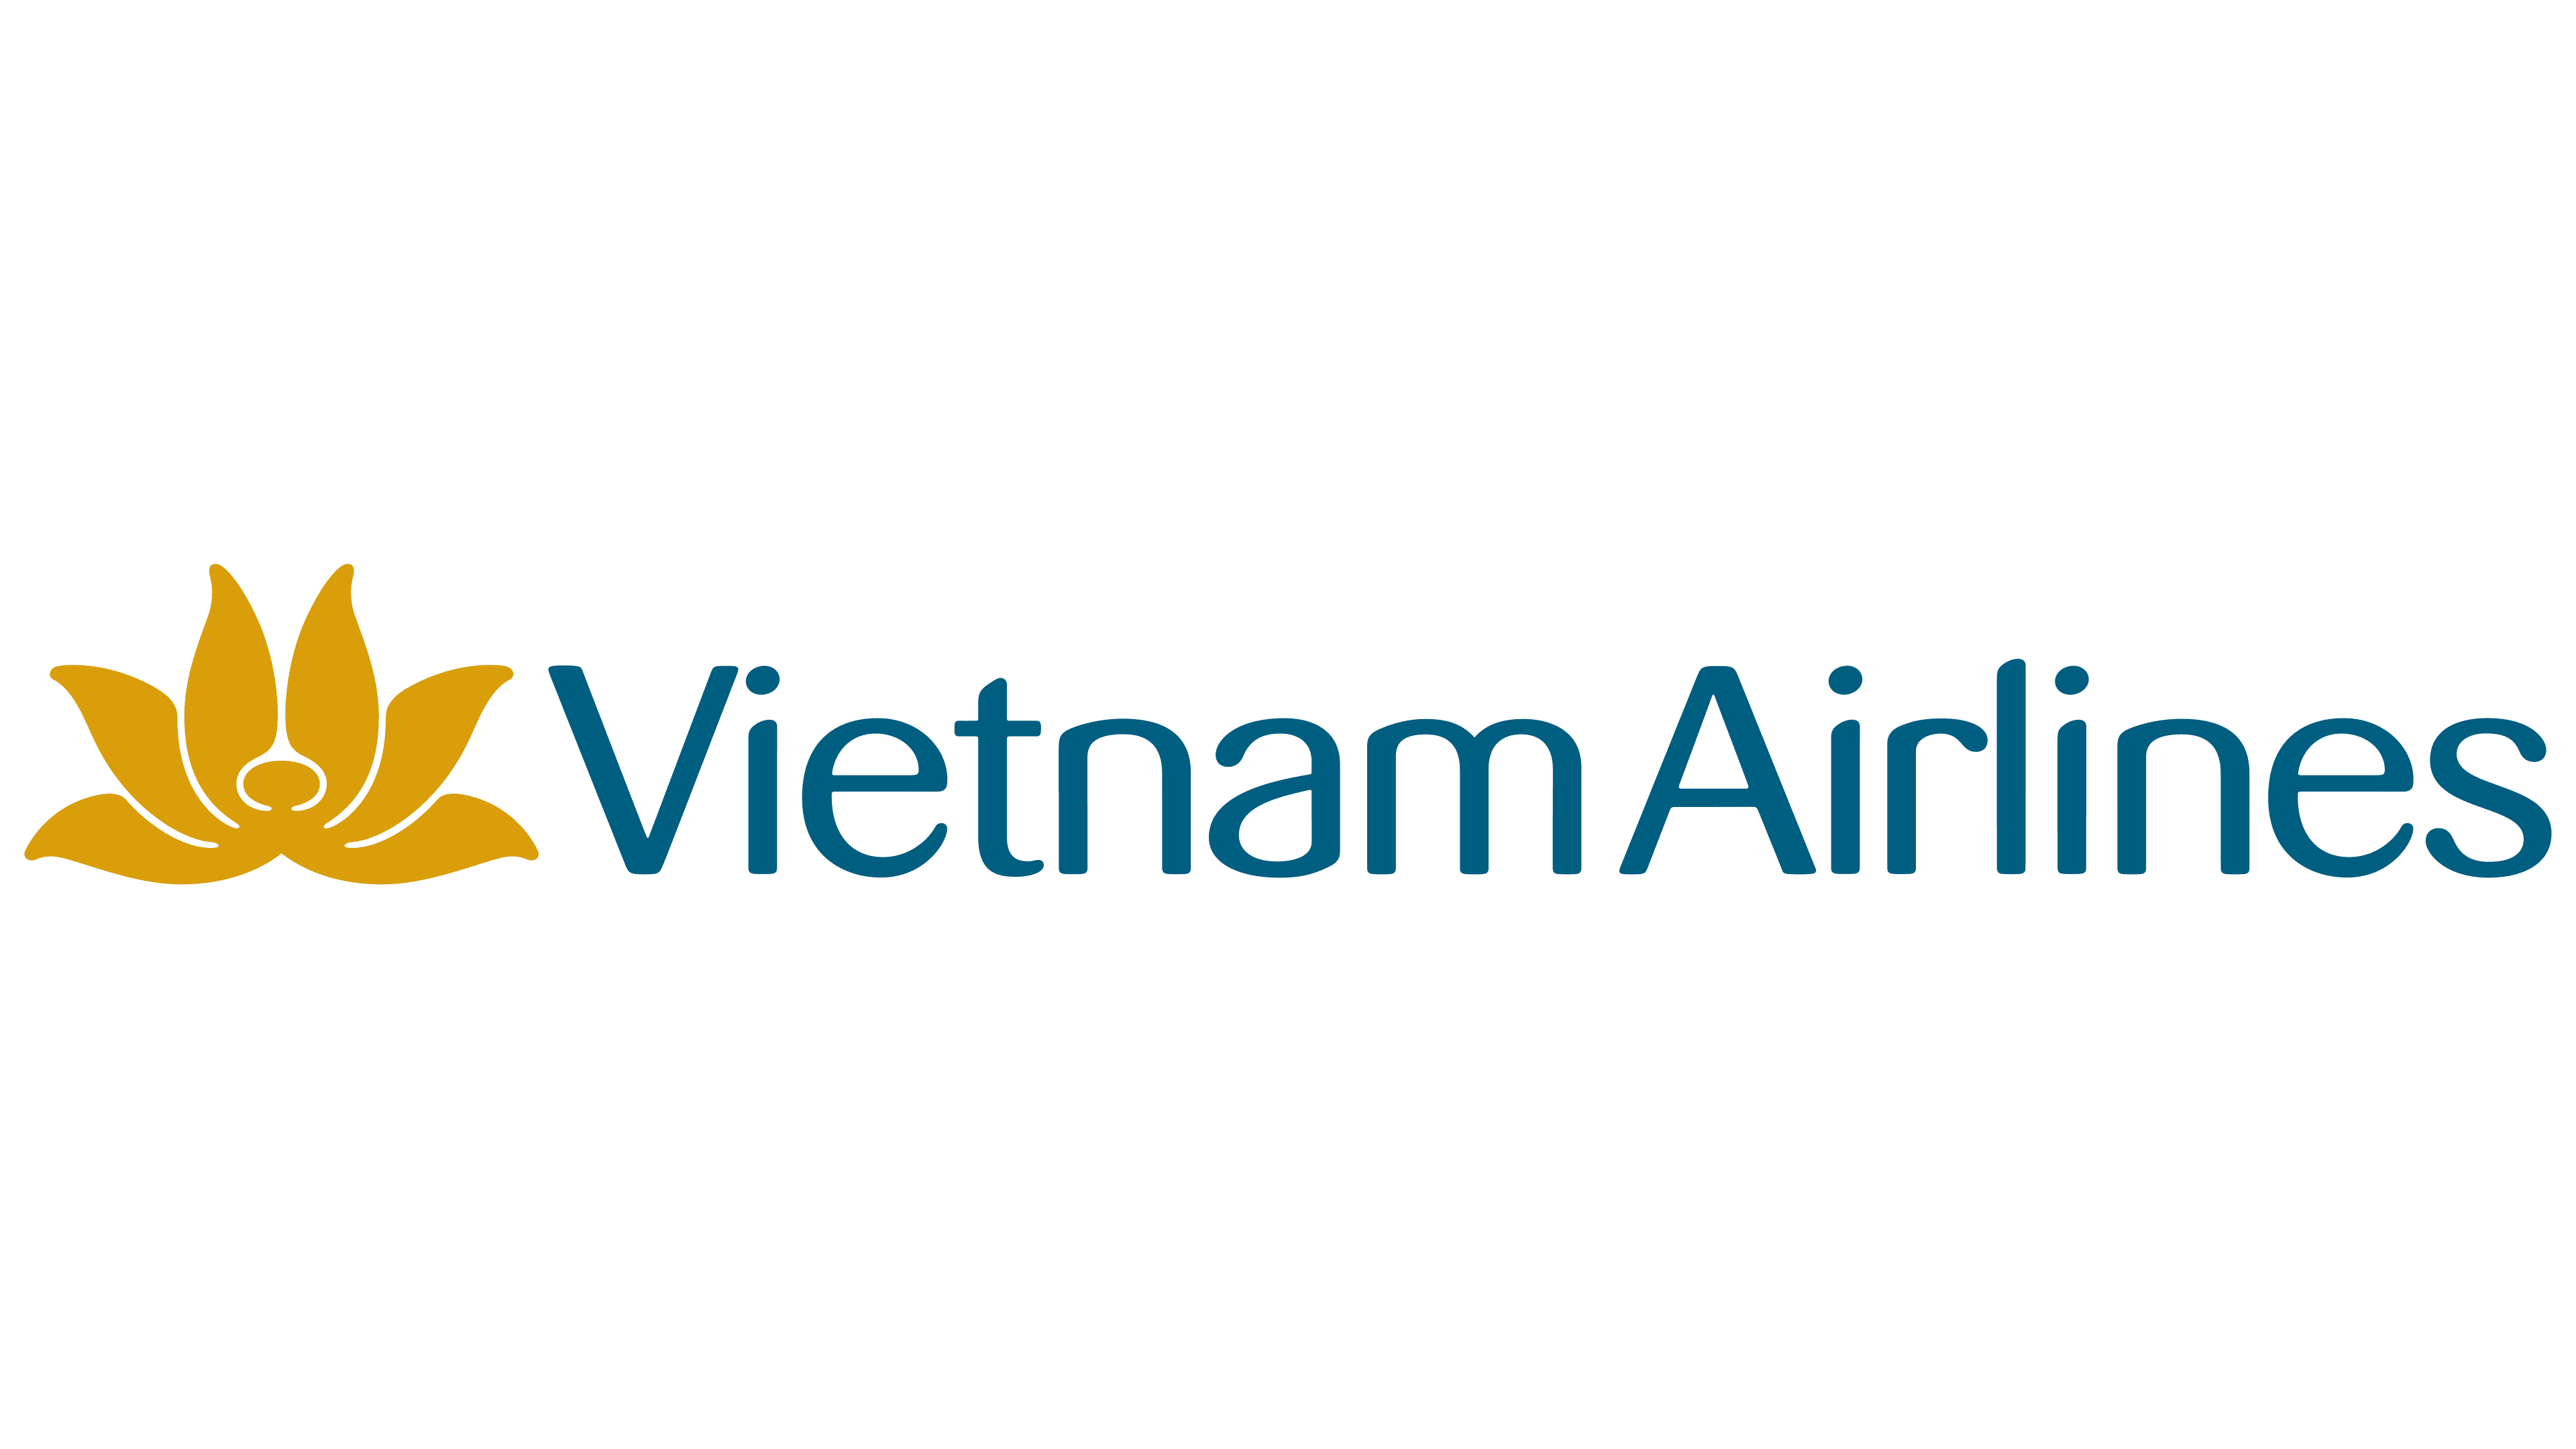 Vietnam Airlines Hong Kong Office